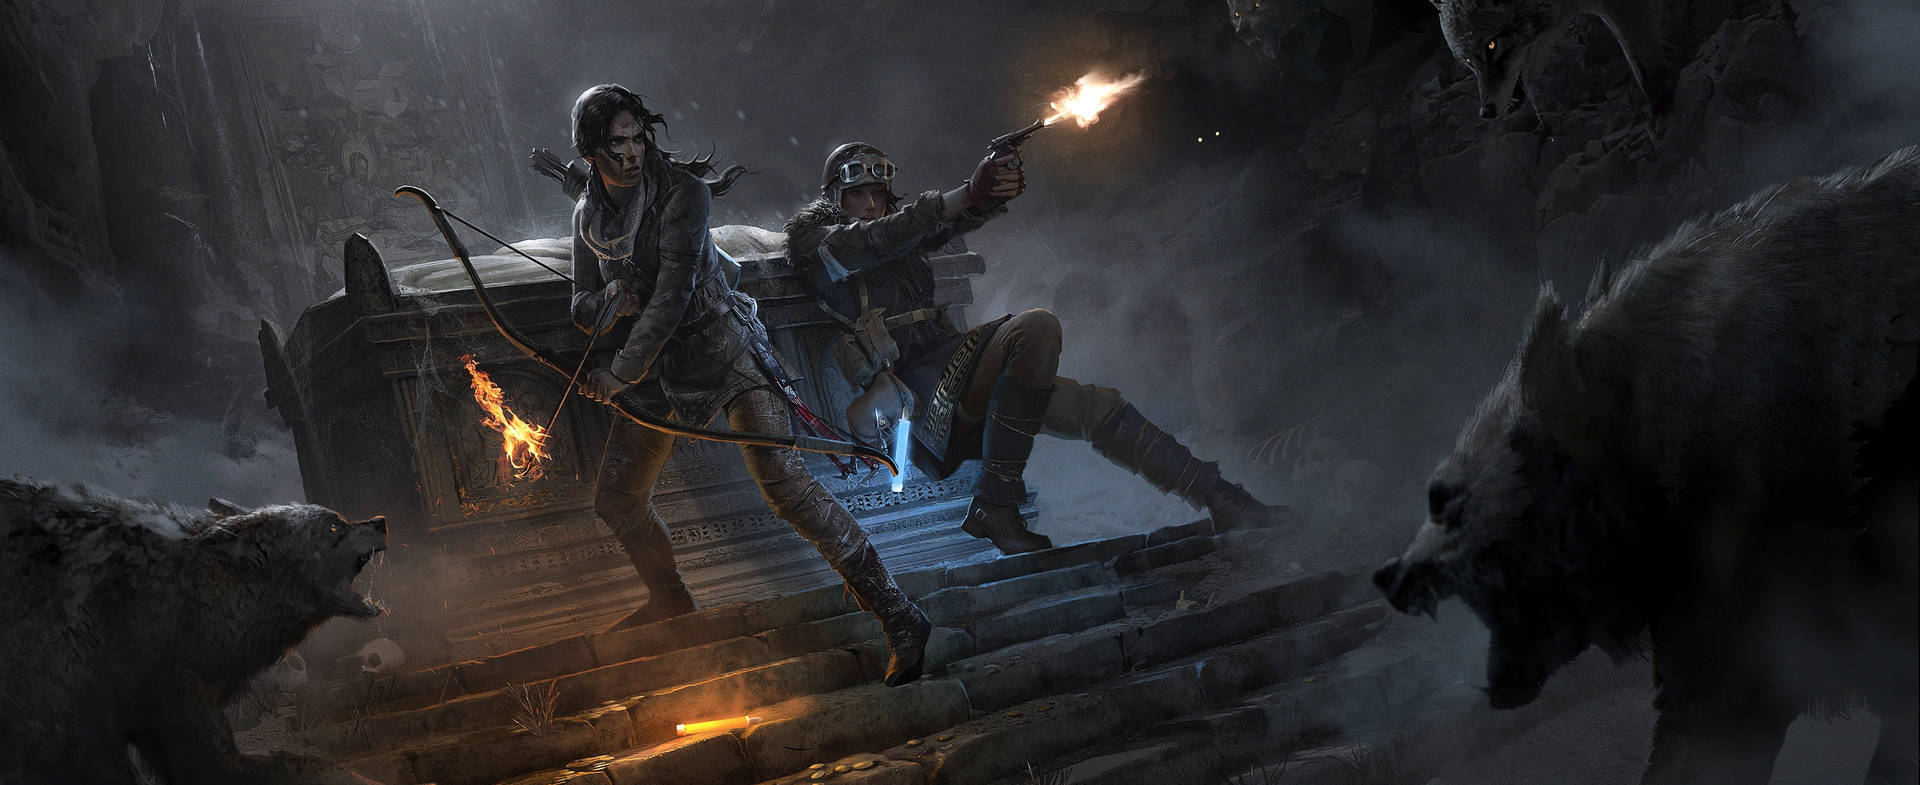 Tombraider 9 Lara Croft Kämpft Gegen Feinde. Wallpaper